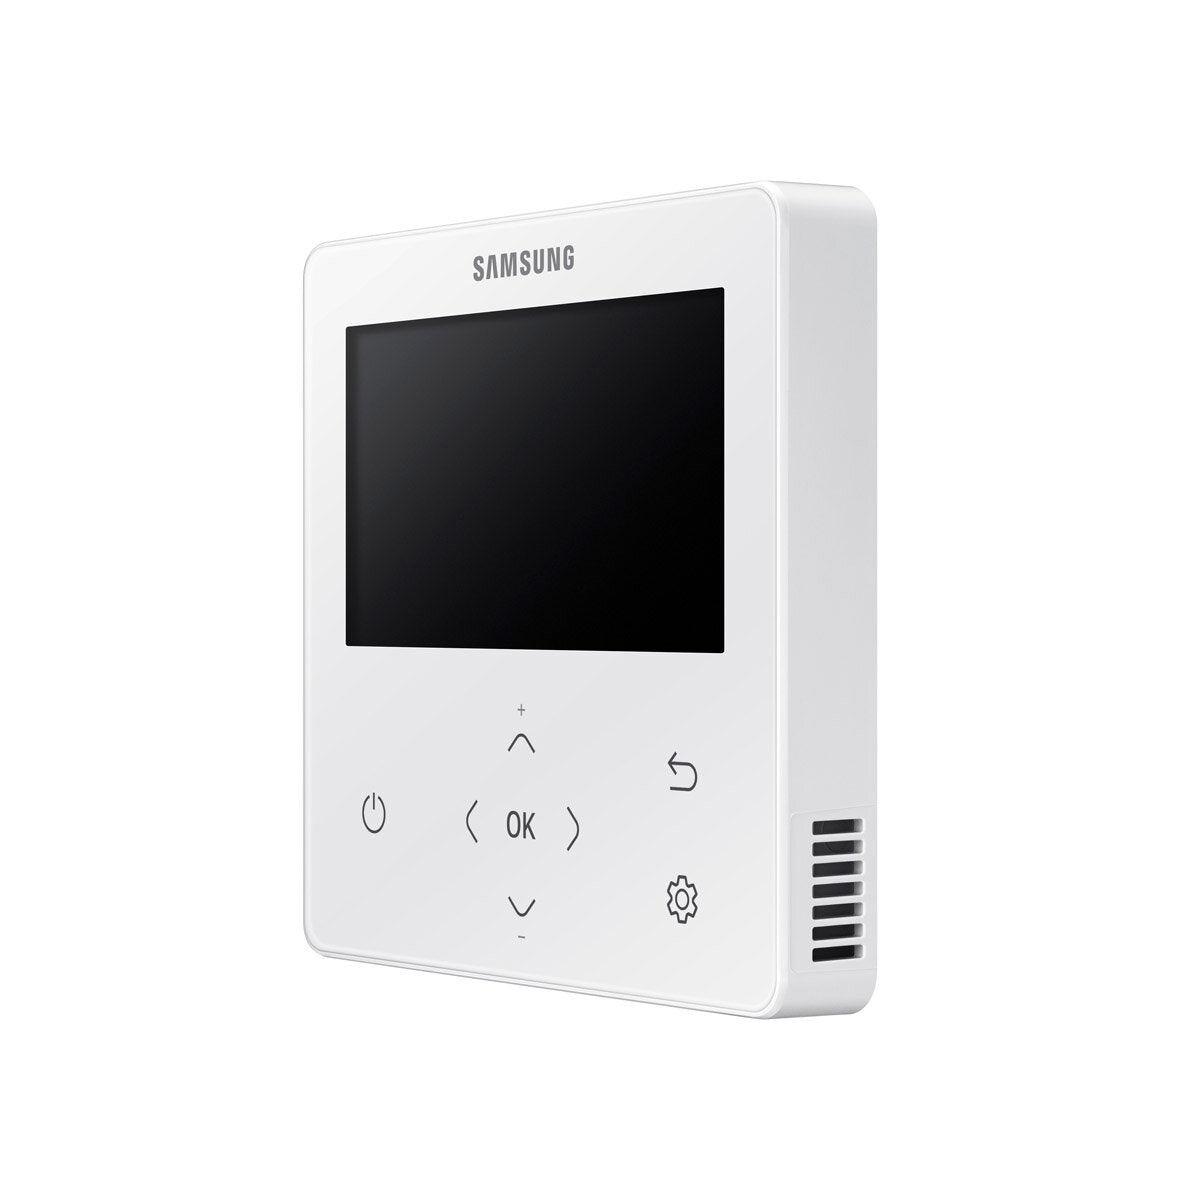 Samsung Climatiseur Cassette WindFree 1 Way dual split 12000 + 12000 BTU inverter A+++ unité externe 5.0 kW